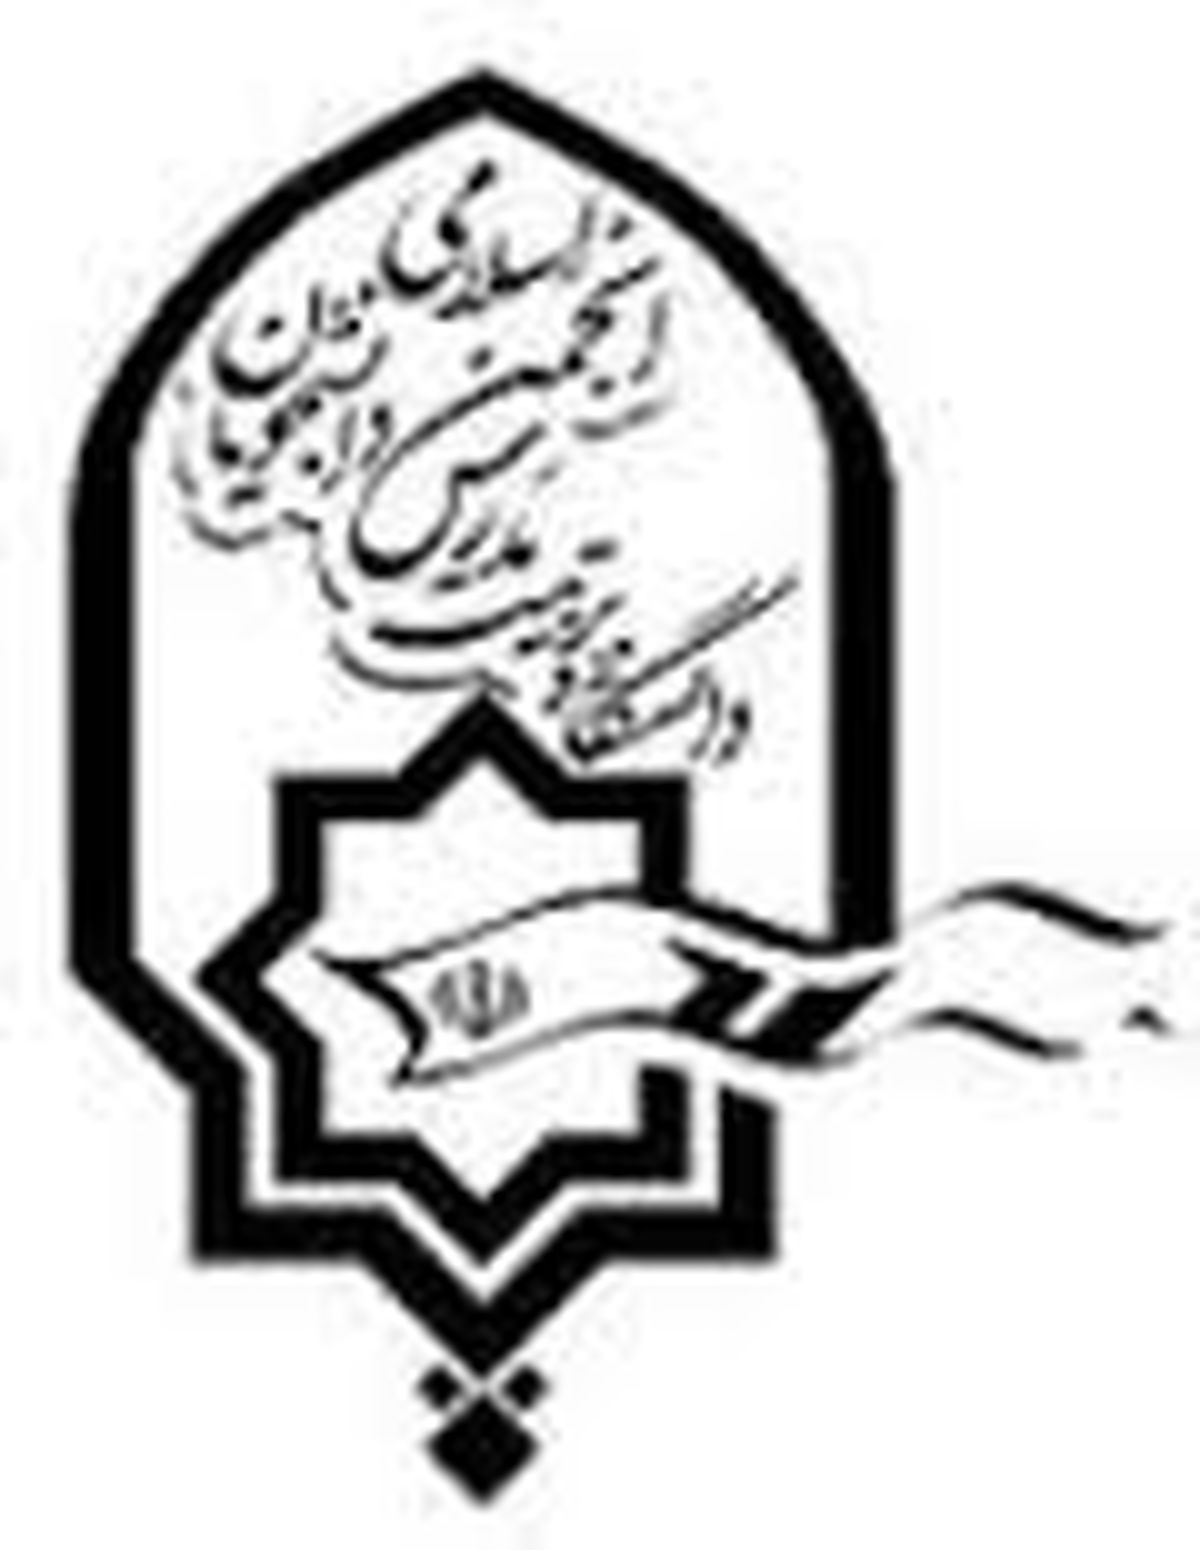 انجمن اسلامی دانشگاه تربیت مدرس: تصمیم وزیر علوم برای تغییر رئیس دانشگاه بر اساس چیست؟